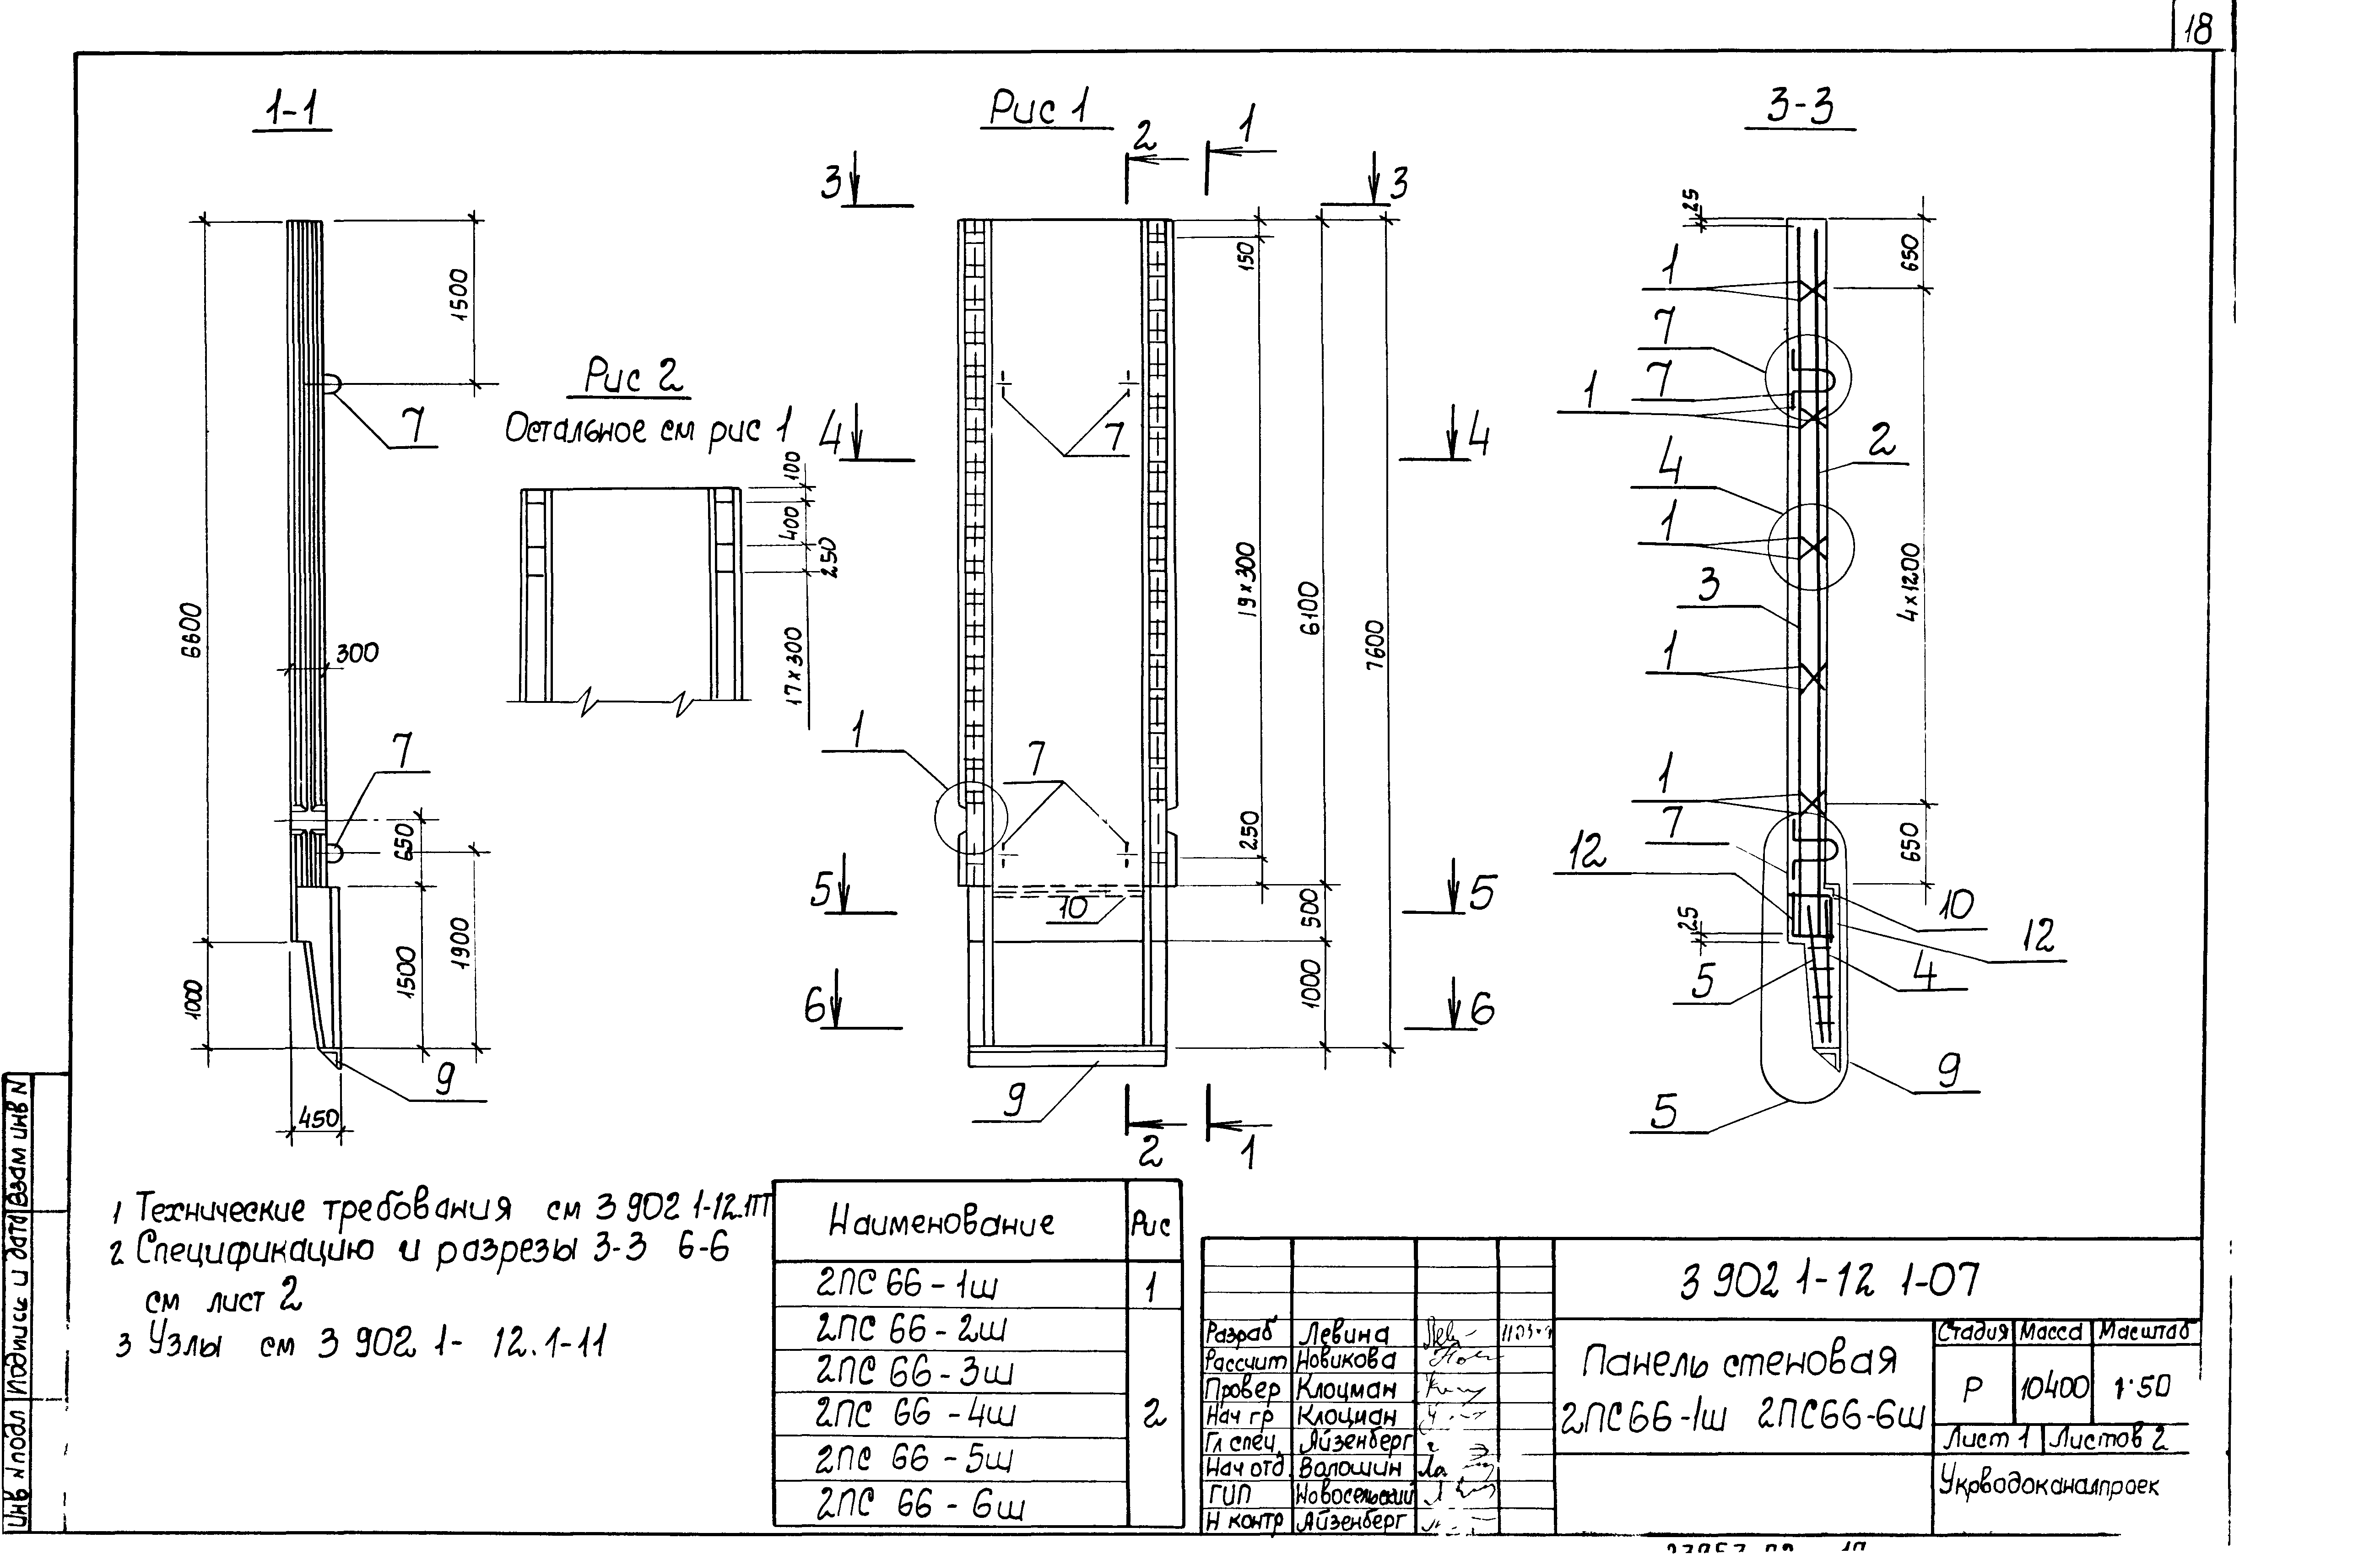 Панель стеновая 2ПС66-4ш Серия 3.902.1-12, вып.1